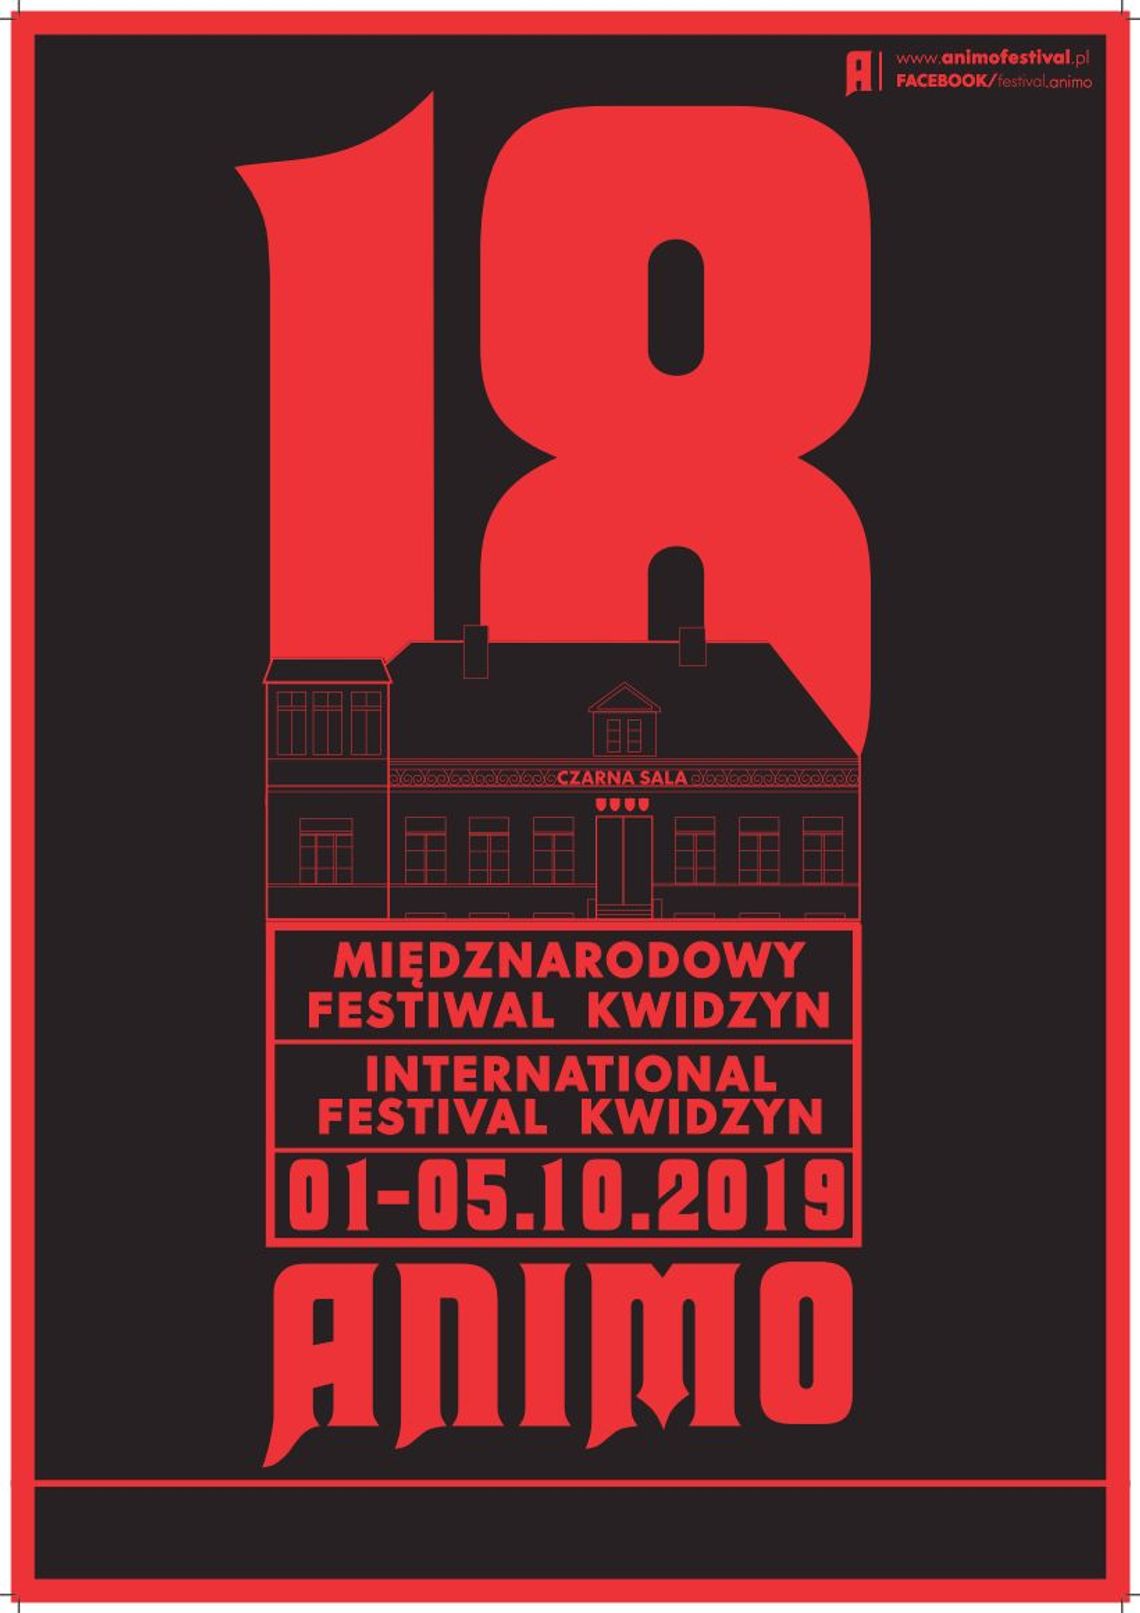 14 Międzynarodowy 18 Festiwal ANIMO Kwidzyn 2019